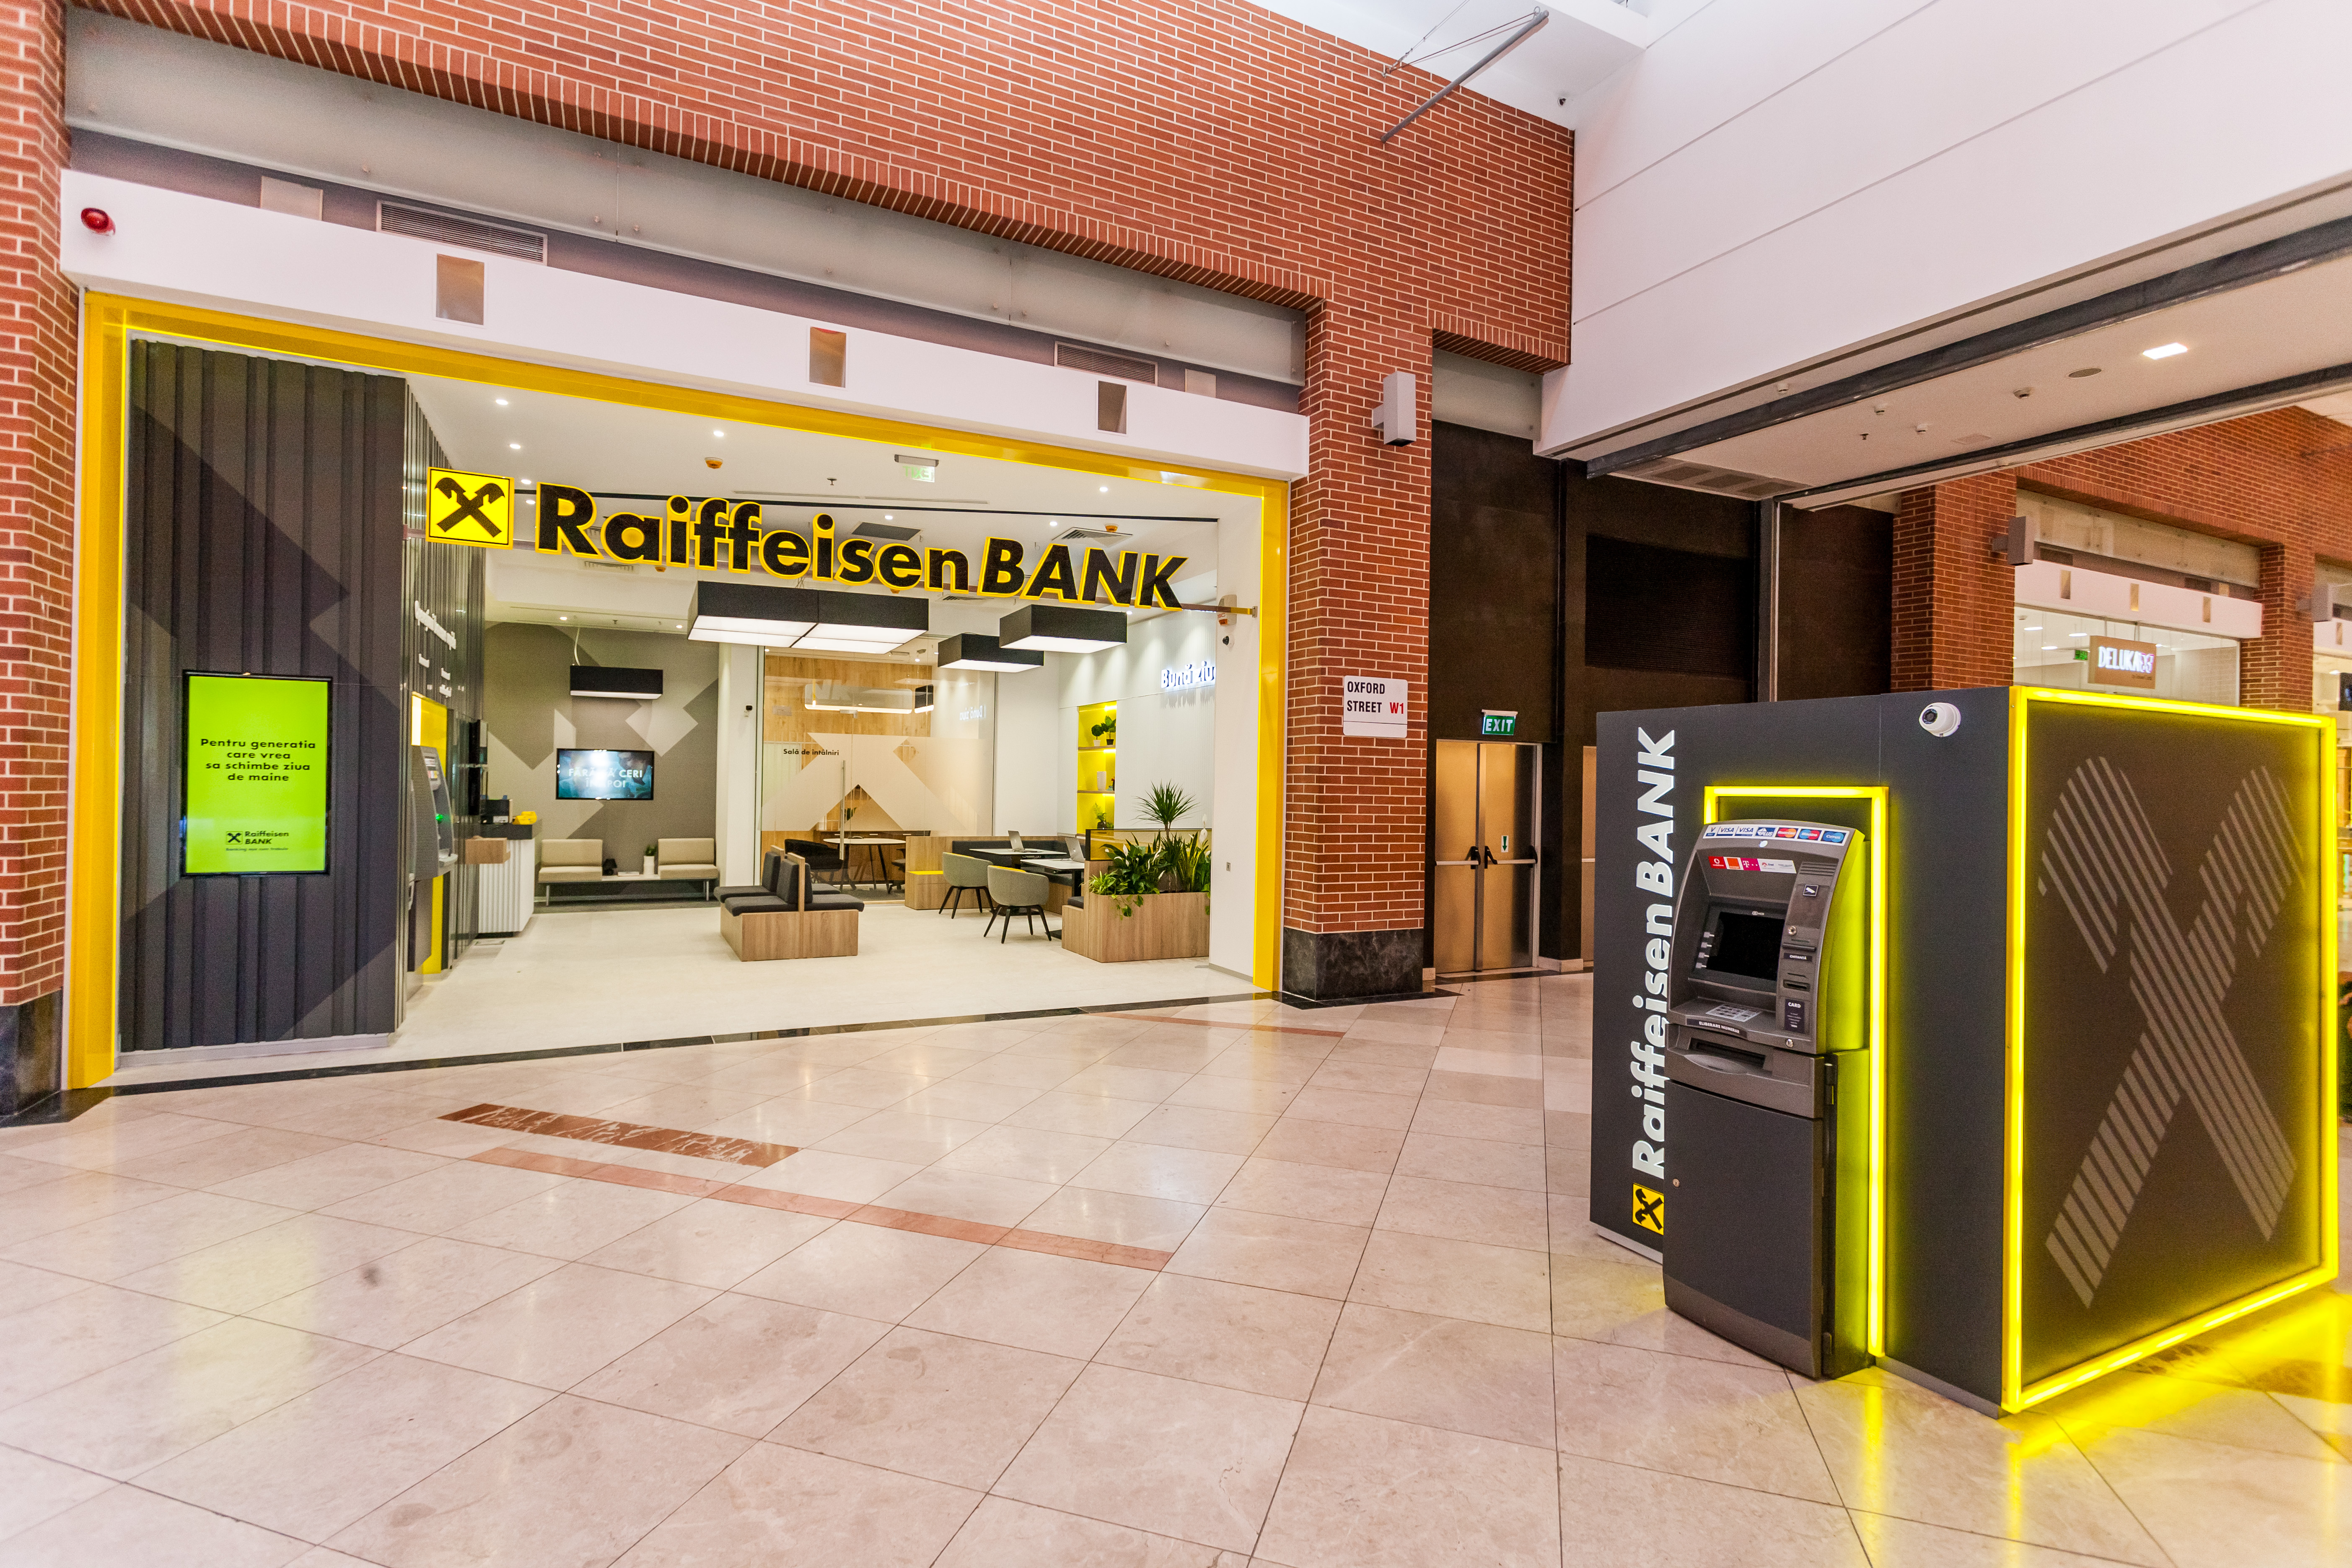 Raiffeisen Bank a susținut cu expertiza sa financiară finanțarea a peste 2.300 de credite pentru clienți prin IMM Invest în 2022, cu o valoare de aproape 600 milioane de euro